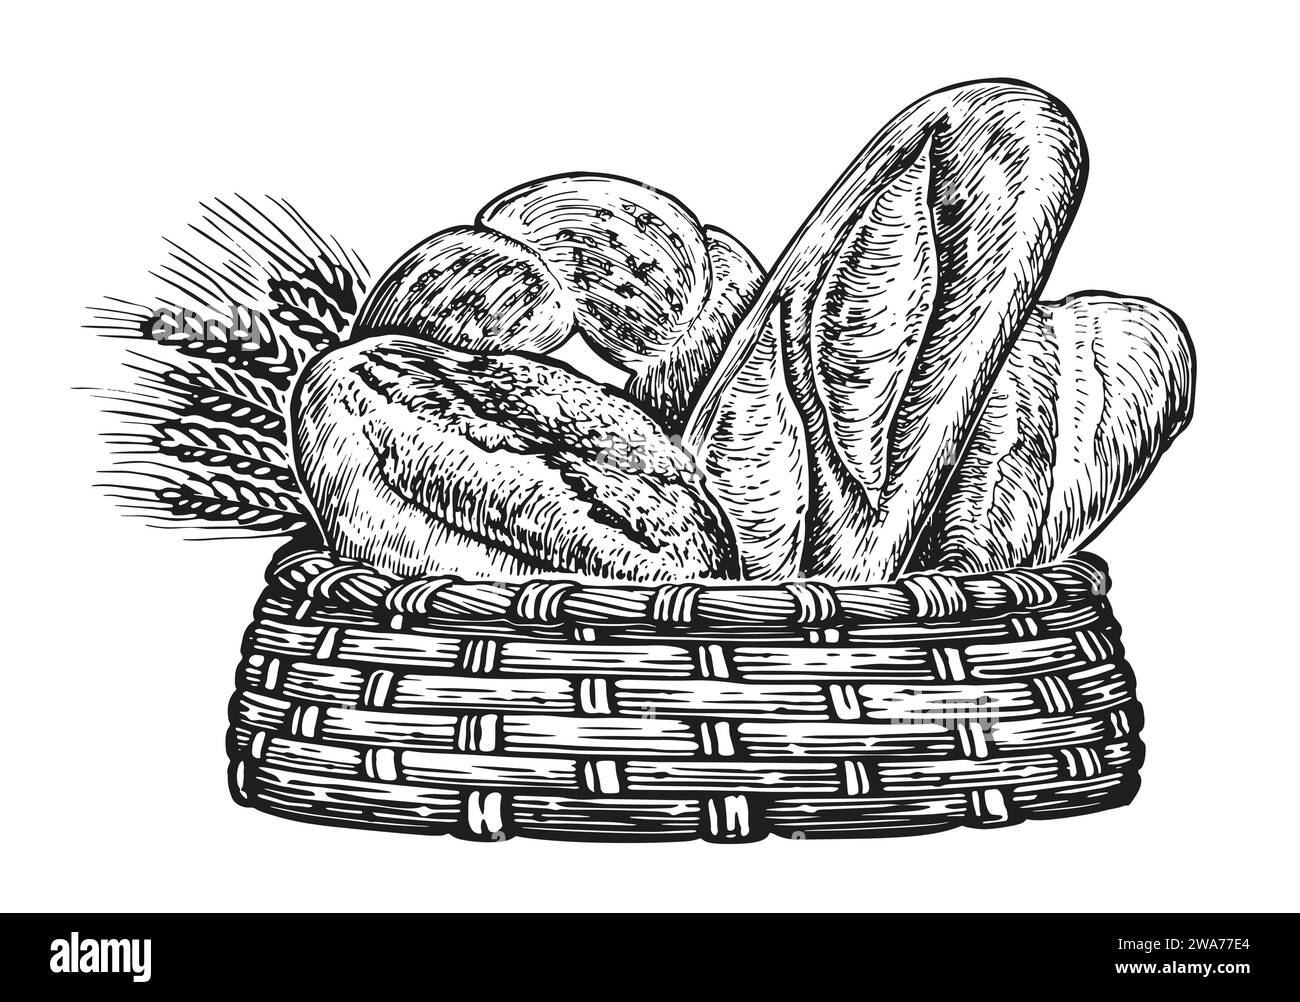 Cestino con pane appena sfornato e frumento. Illustrazione della panetteria Illustrazione Vettoriale